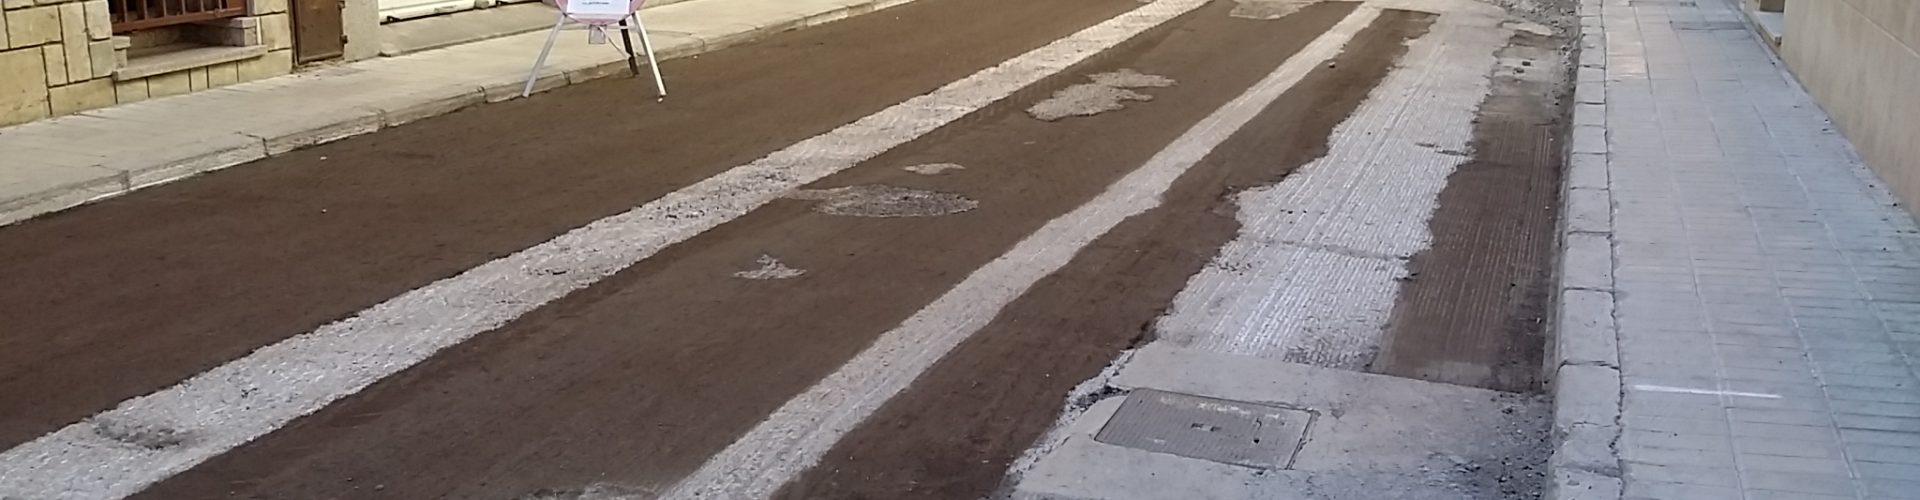 Comença l’asfaltat dels carrers de Benicarló